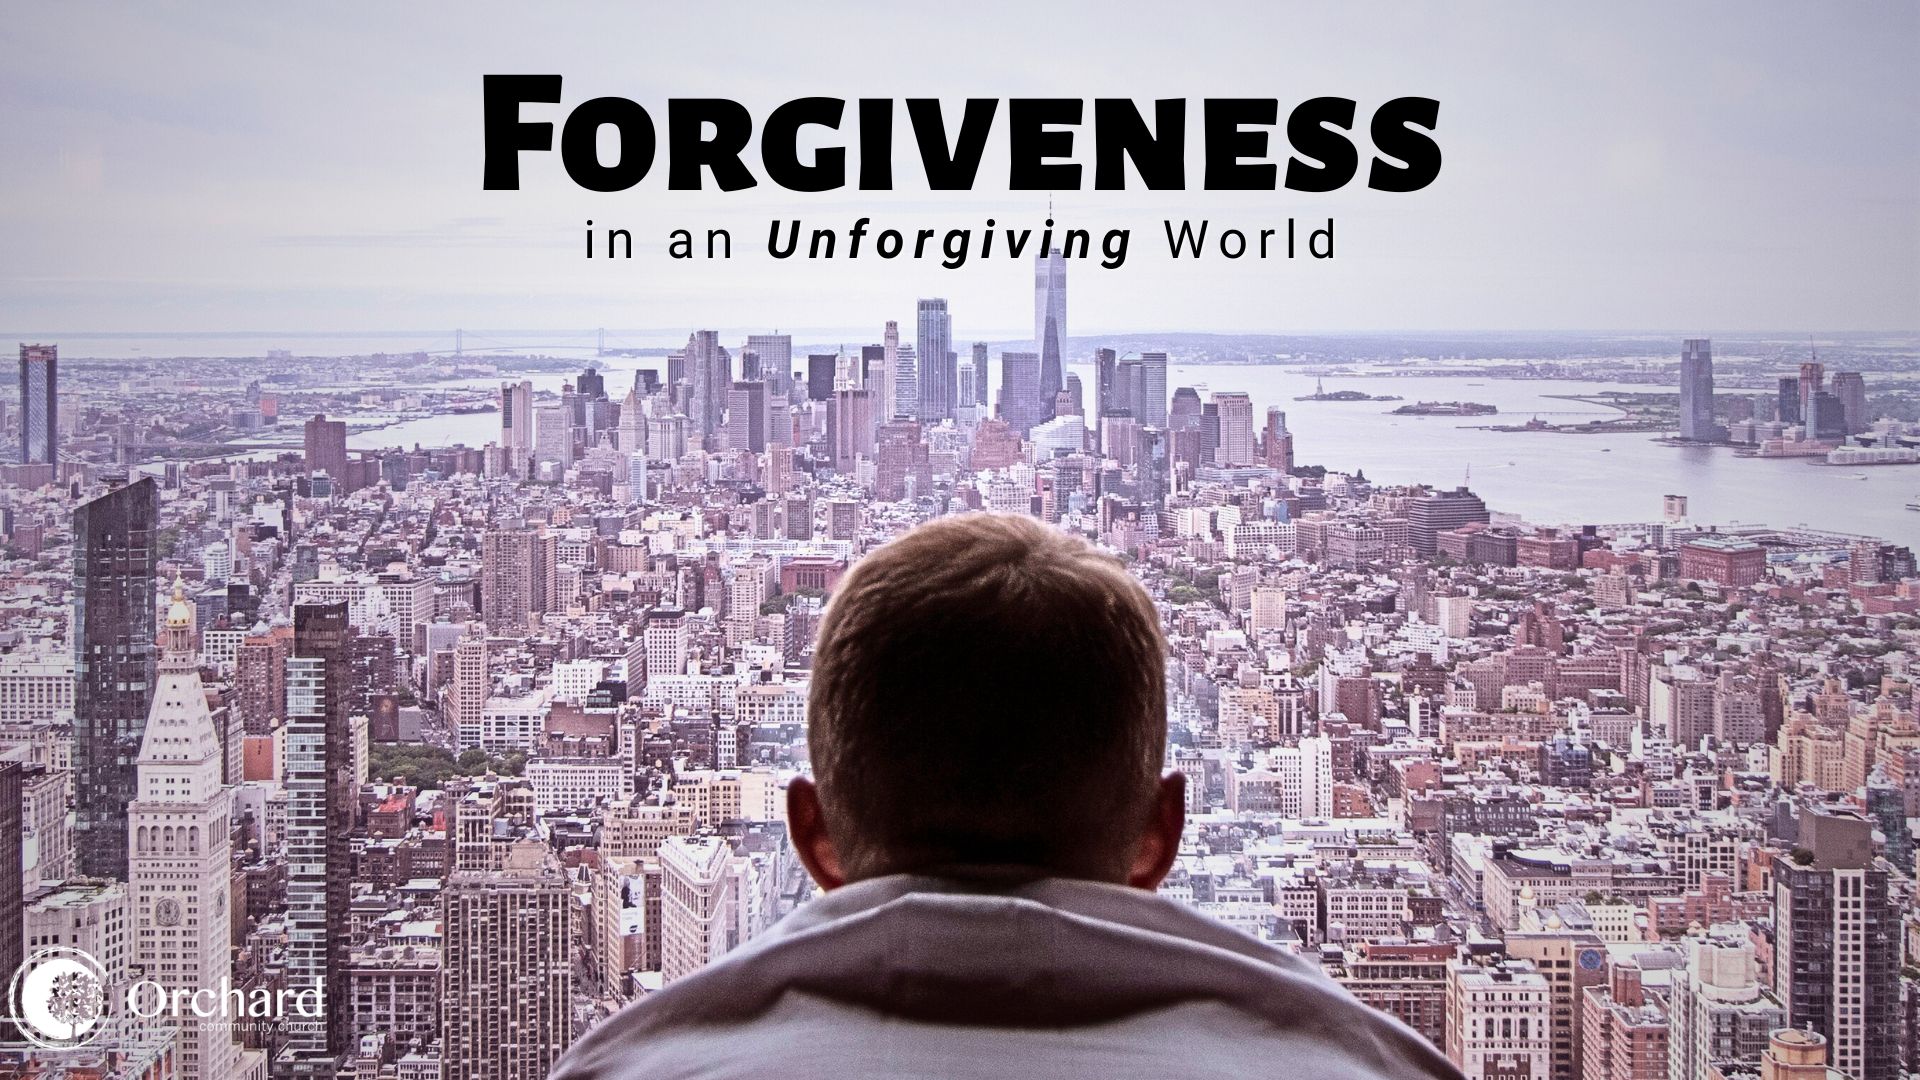 Forgiveness in an Unforgiving World